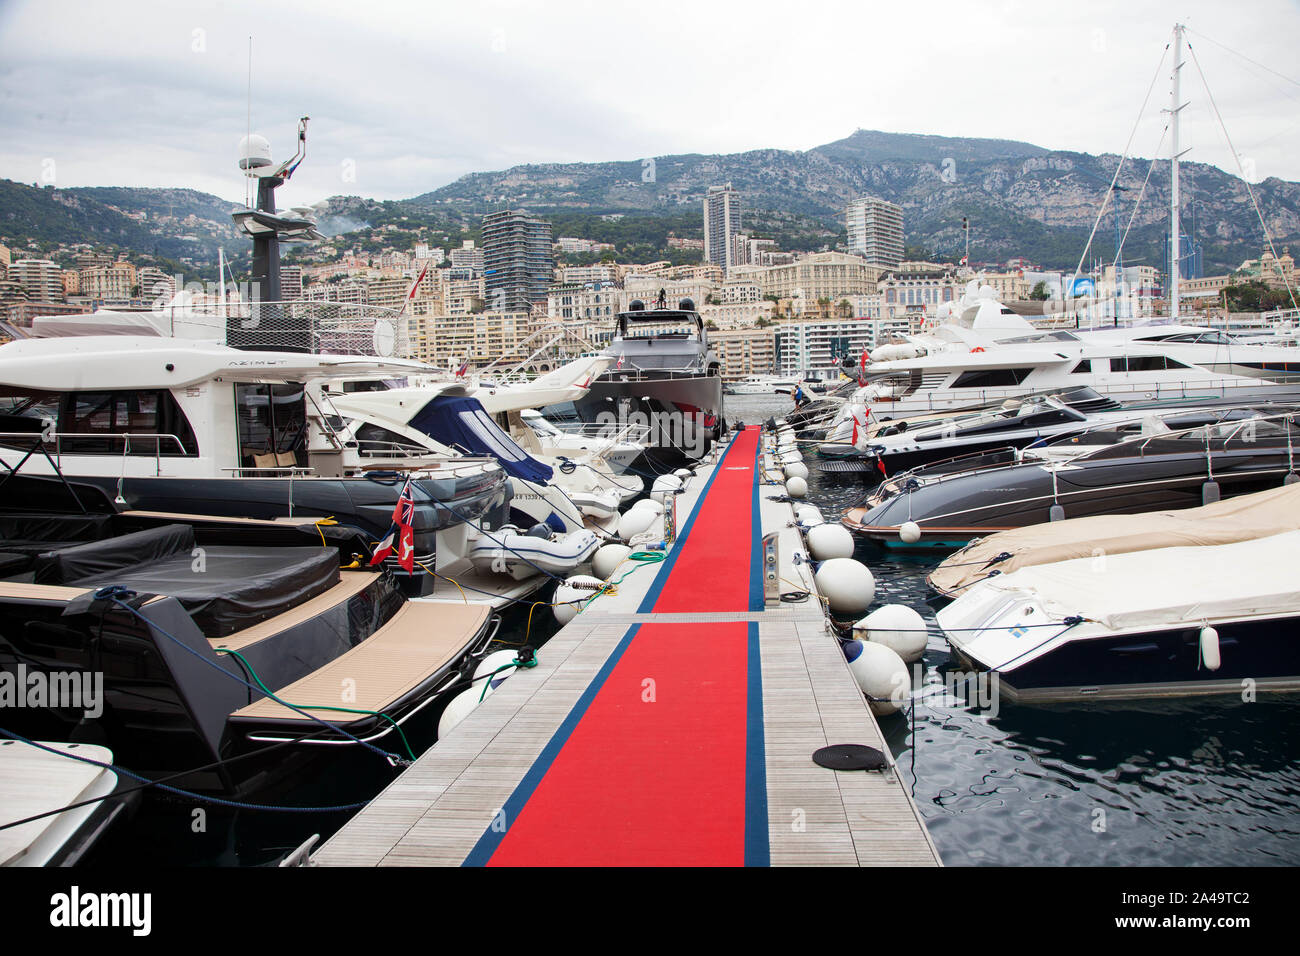 Tapis rouge pour les bateaux de luxe dans le port de Monte Carlo, Monaco. Jeppe Photo Gustafsson Banque D'Images